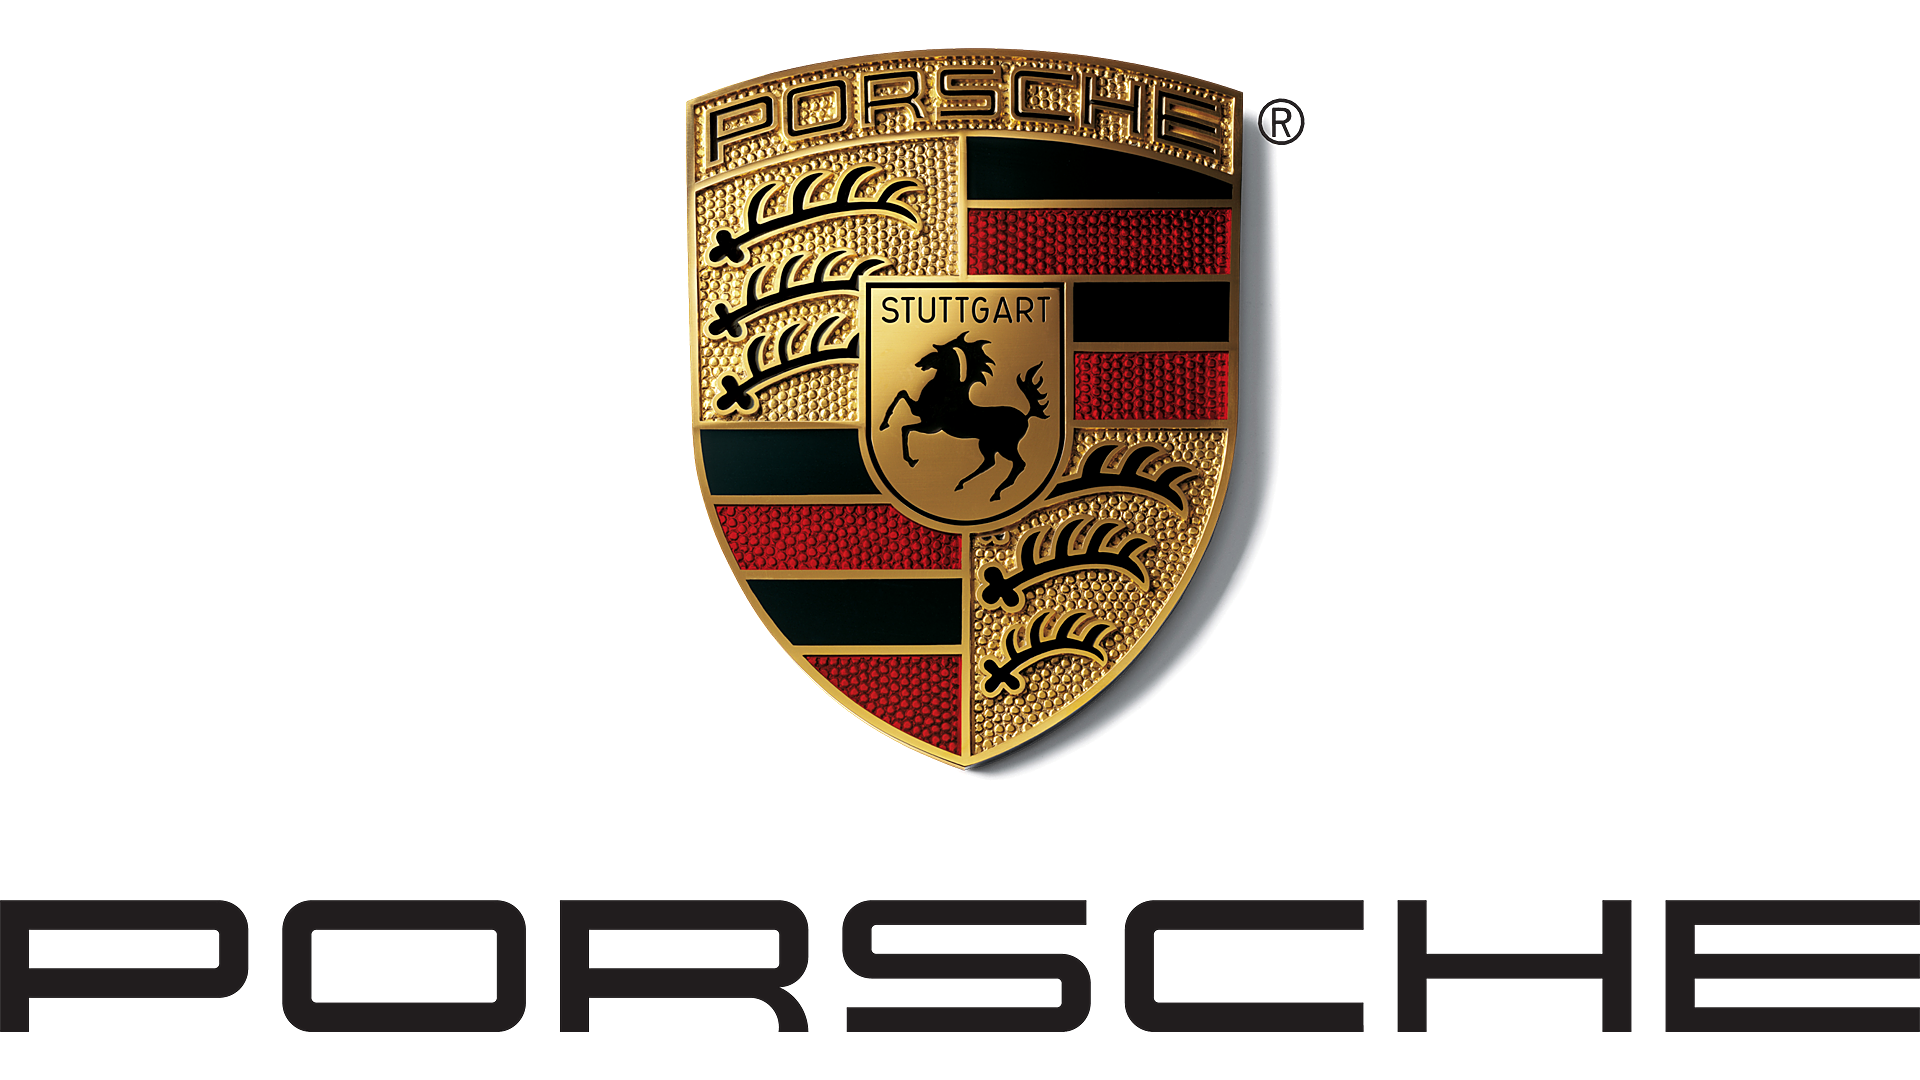 Porsche Repair